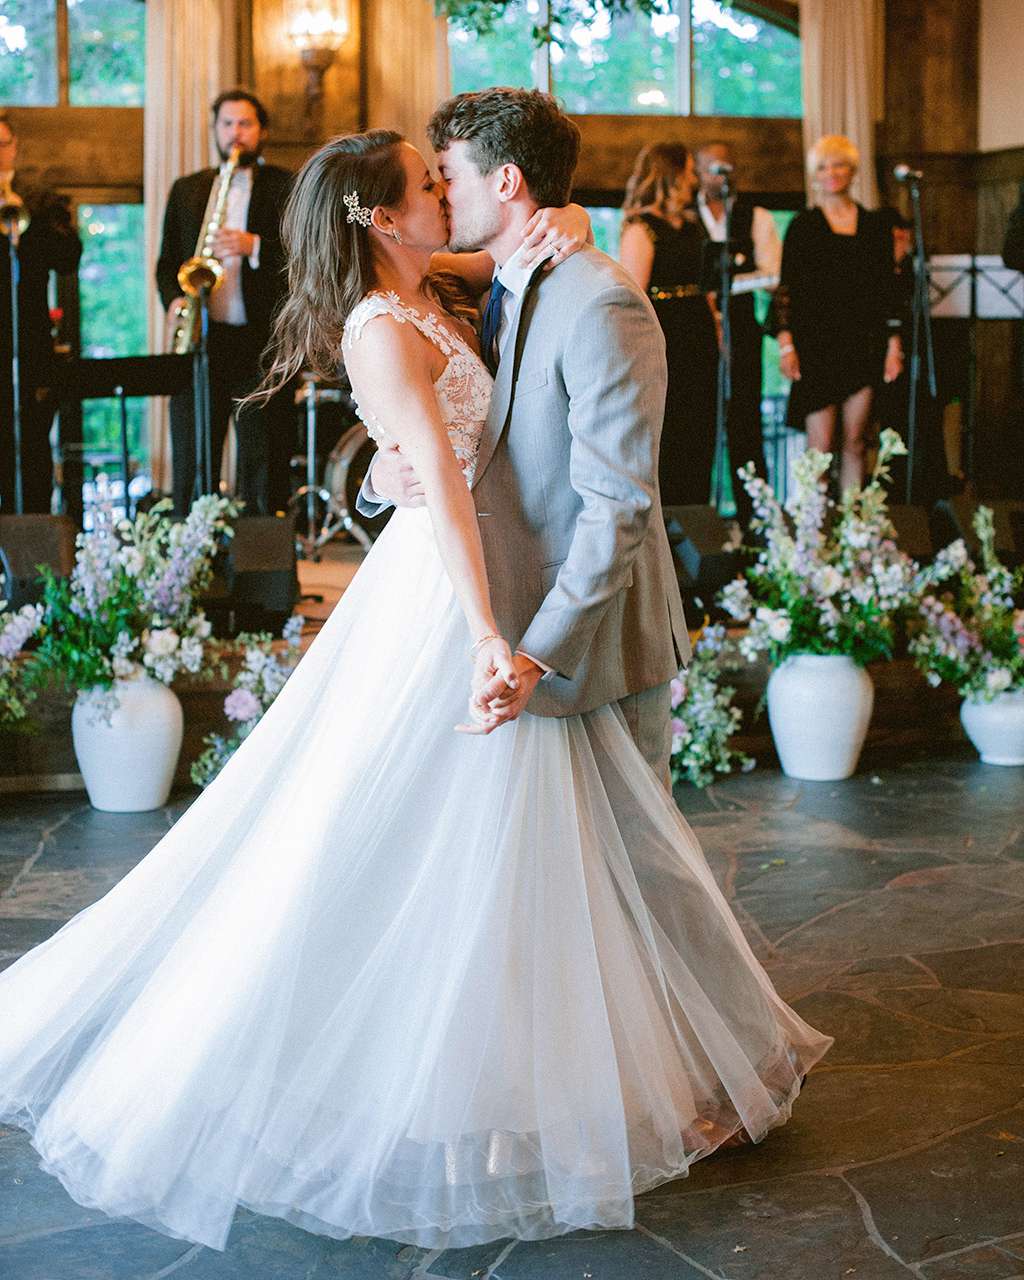 groom bride wedding dance kiss indoors